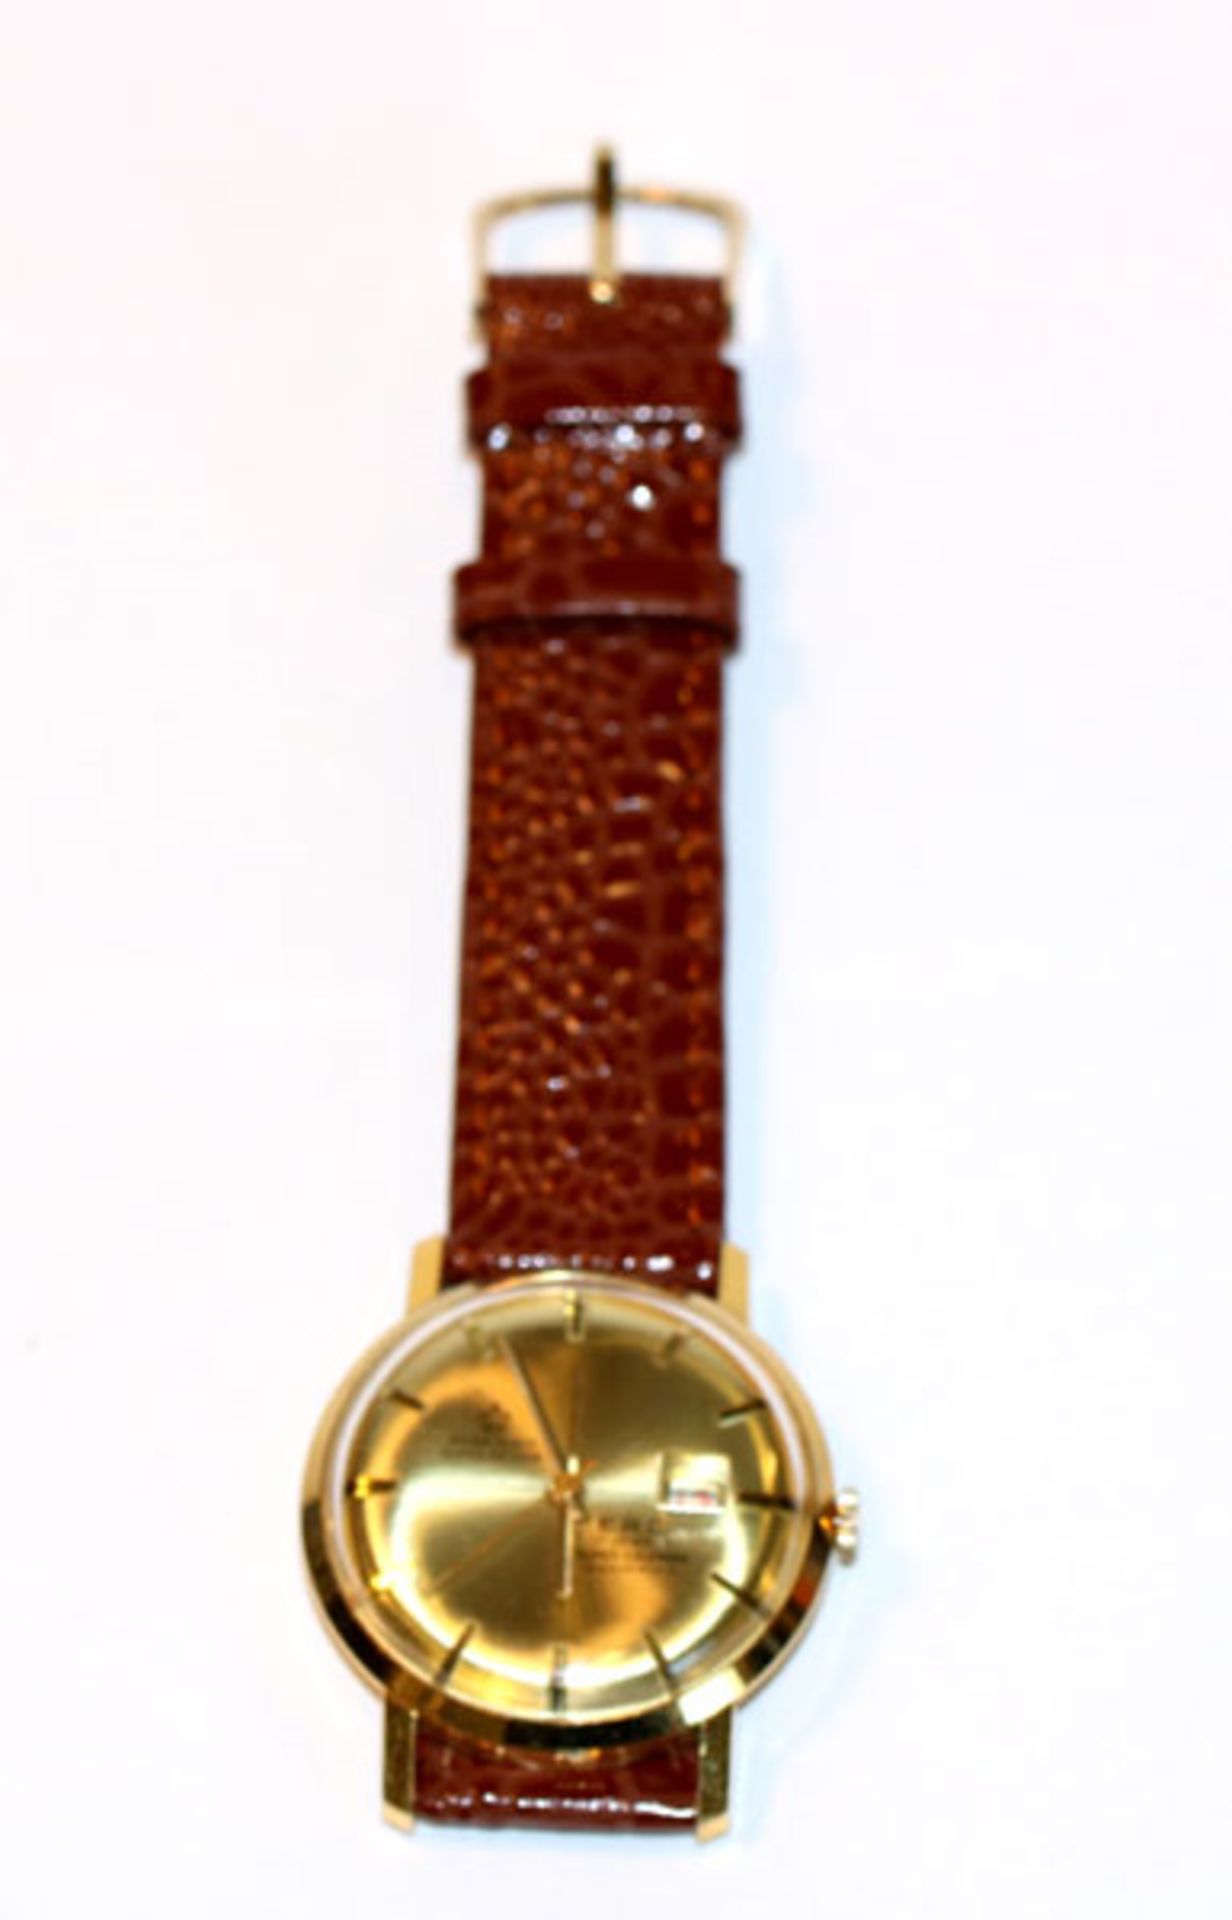 E.R.C. Herren Armbanduhr mit Datum, mechanisches Werk, intakt, wenig getragen, an neuem, braunem